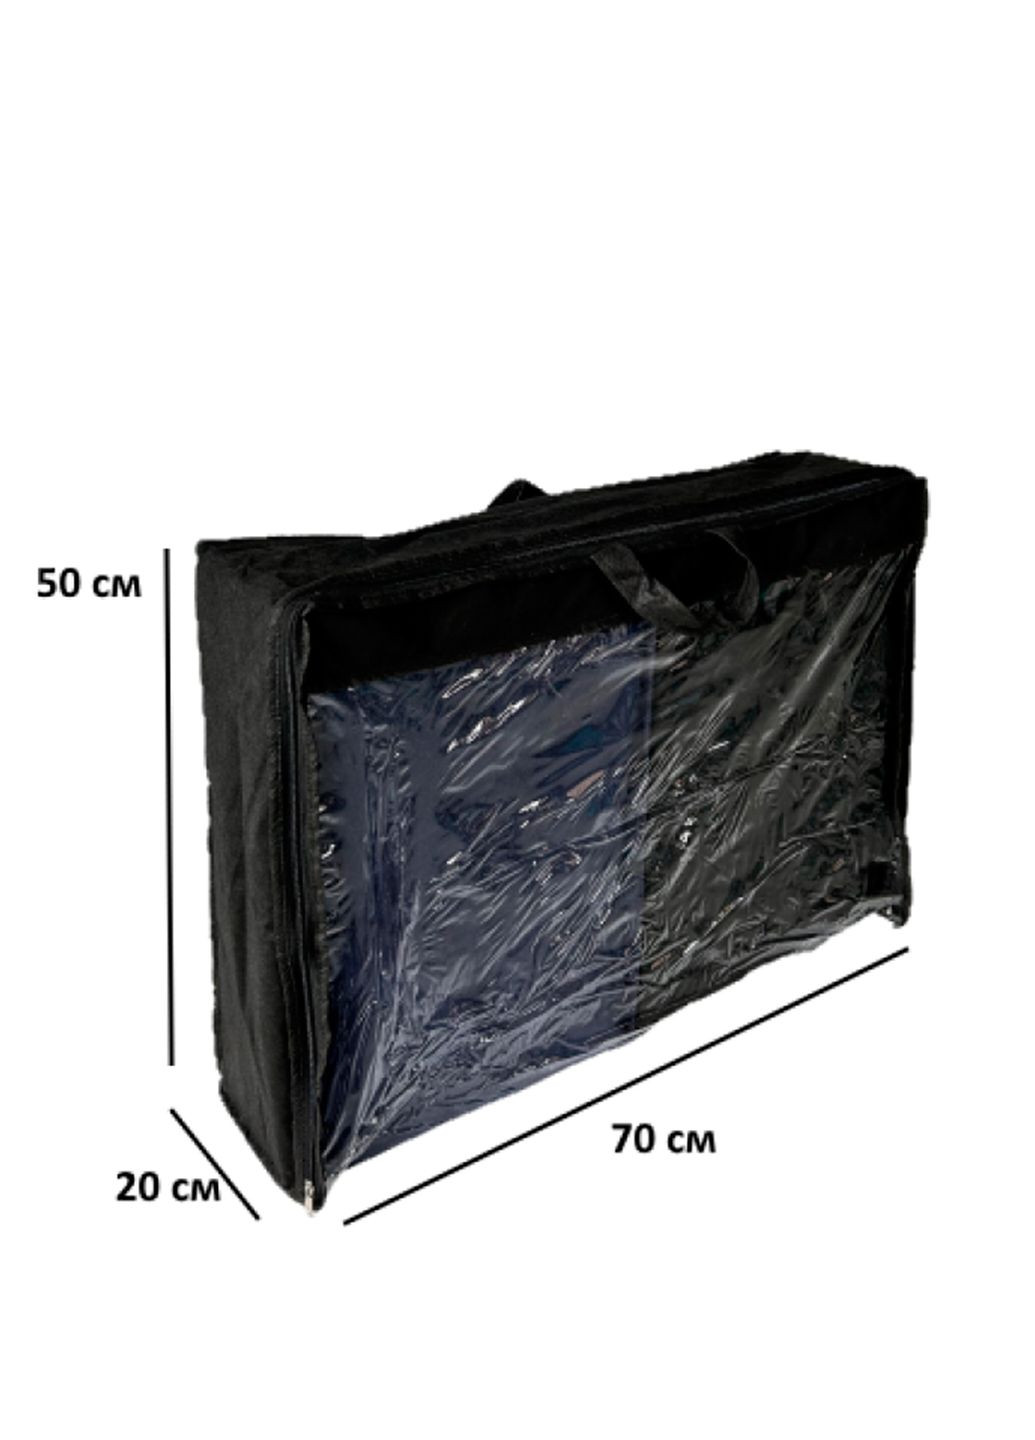 Чехол-сумка для хранения вещей, одеял, подушек L 70х50х20 см с ручкой Organize (291018699)